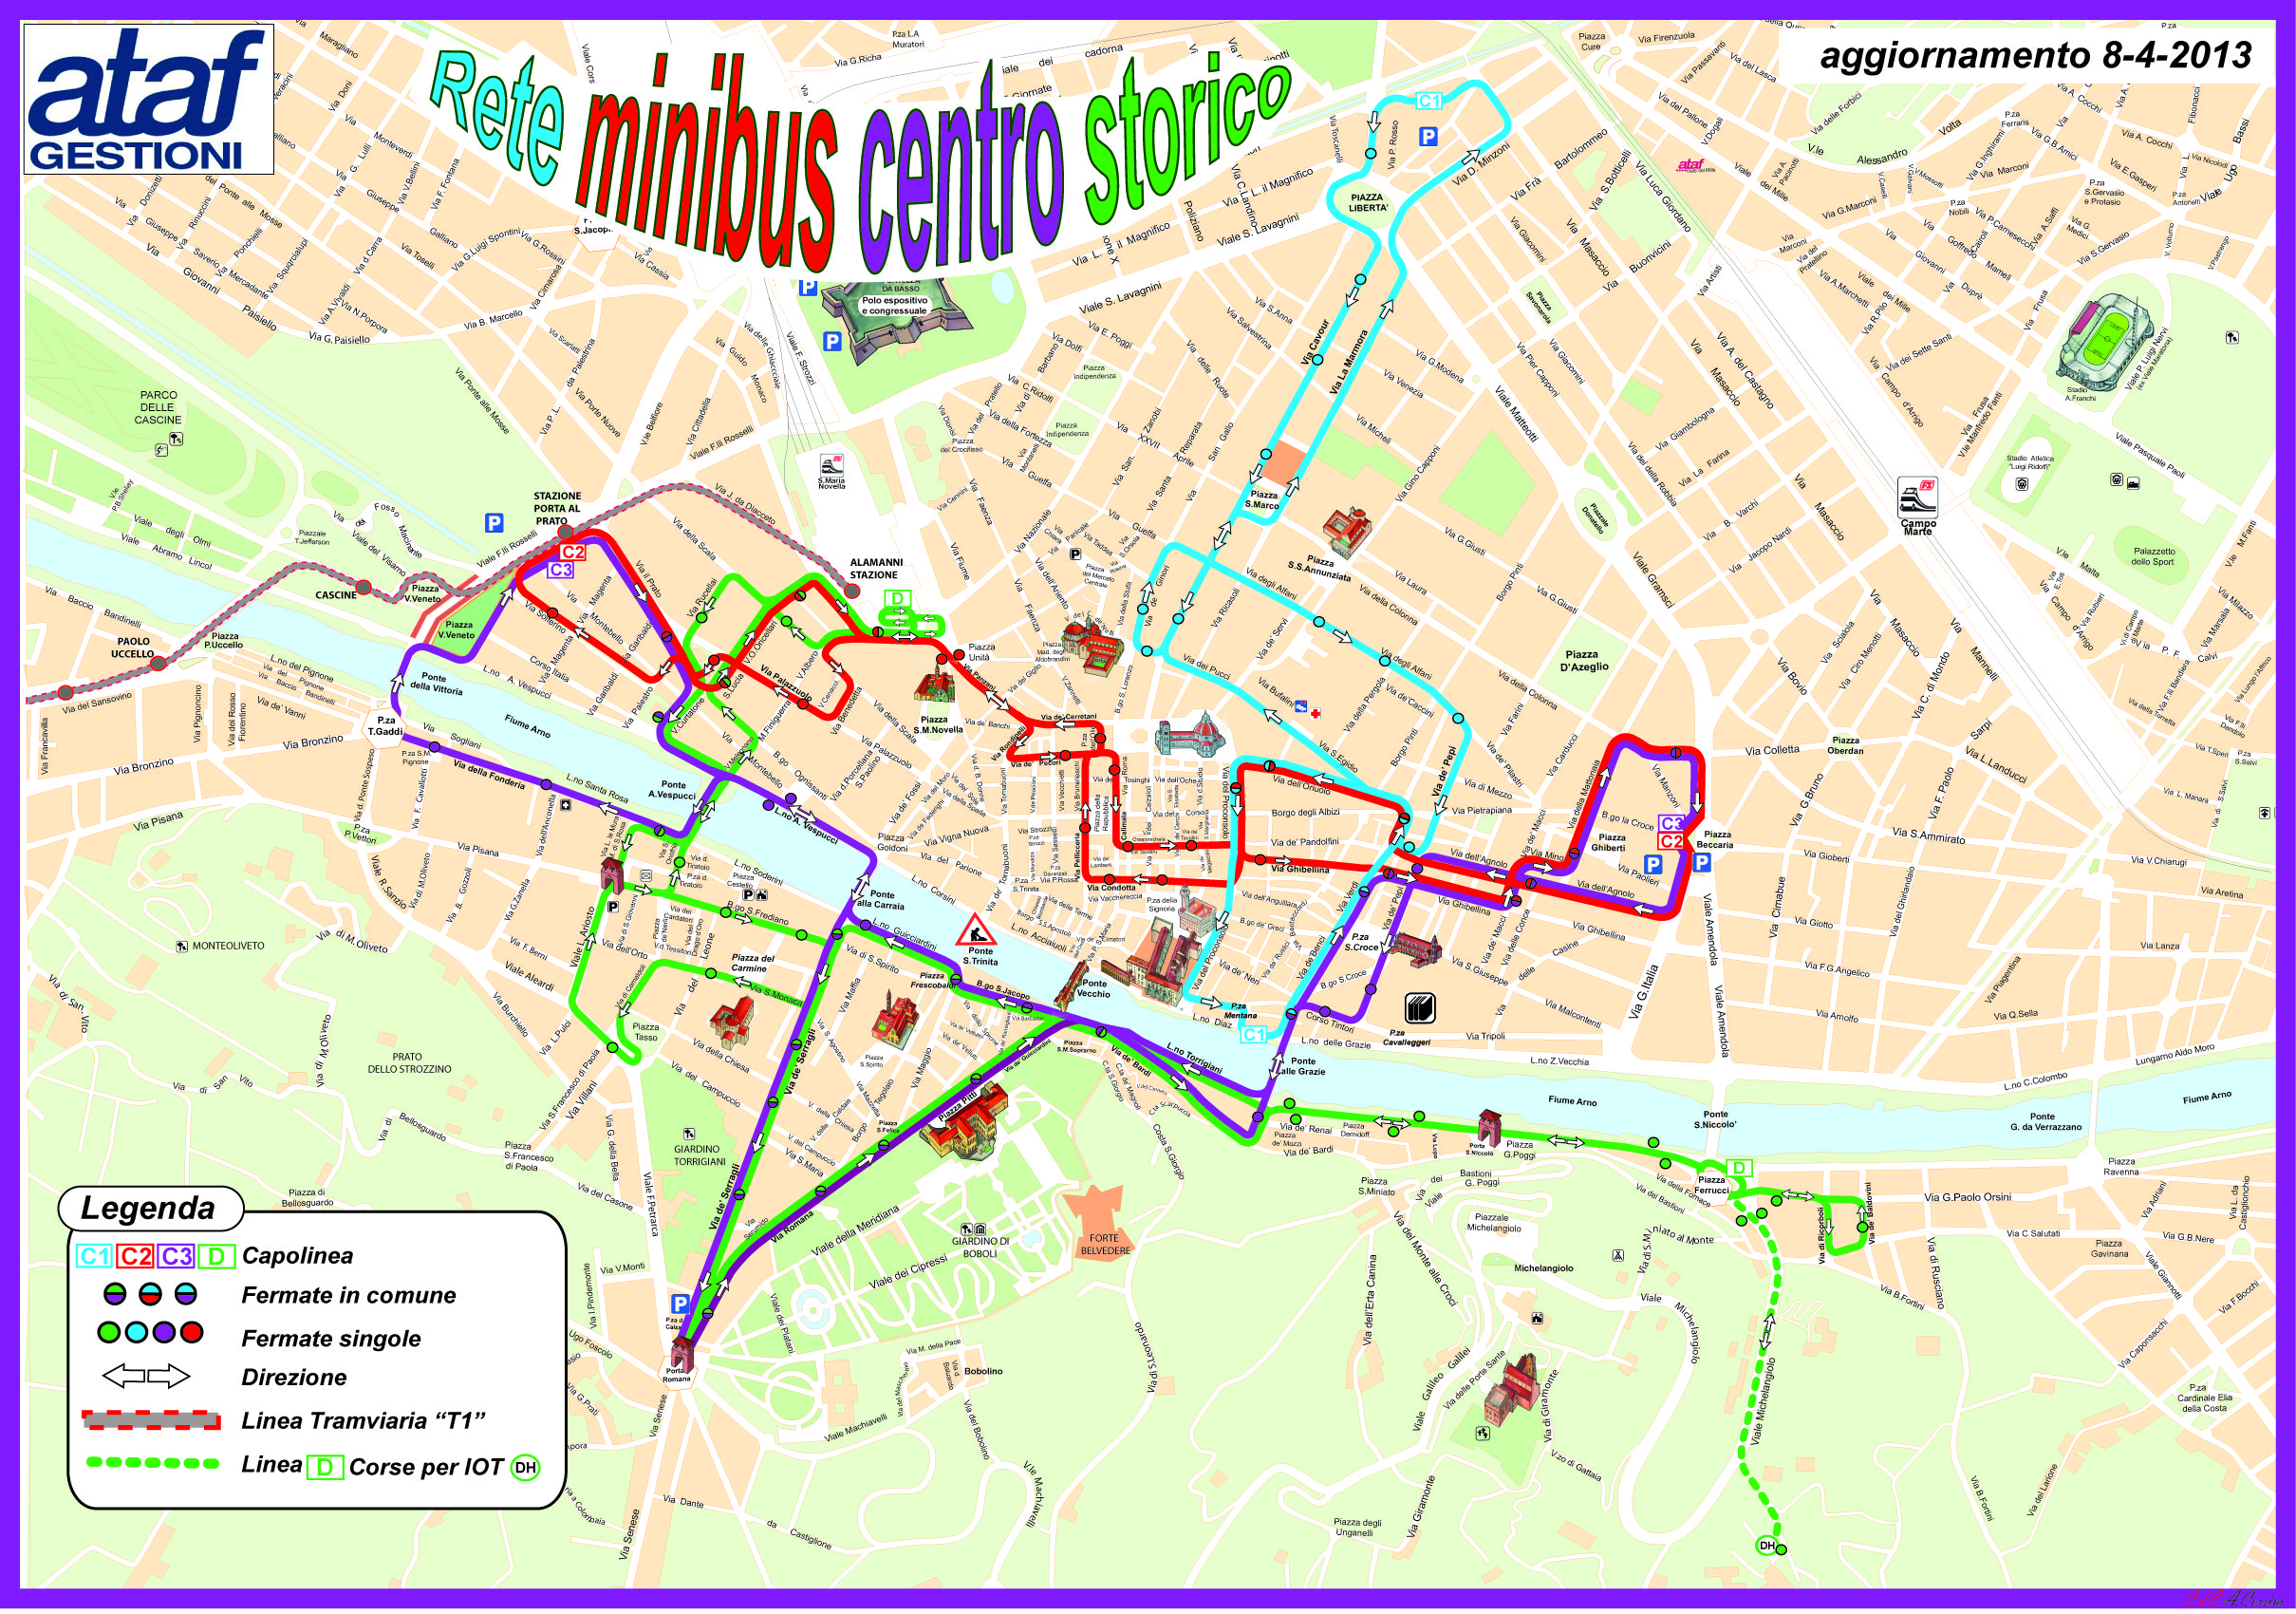 Флоренция_схема автобусных маршрутов по историческому центру города